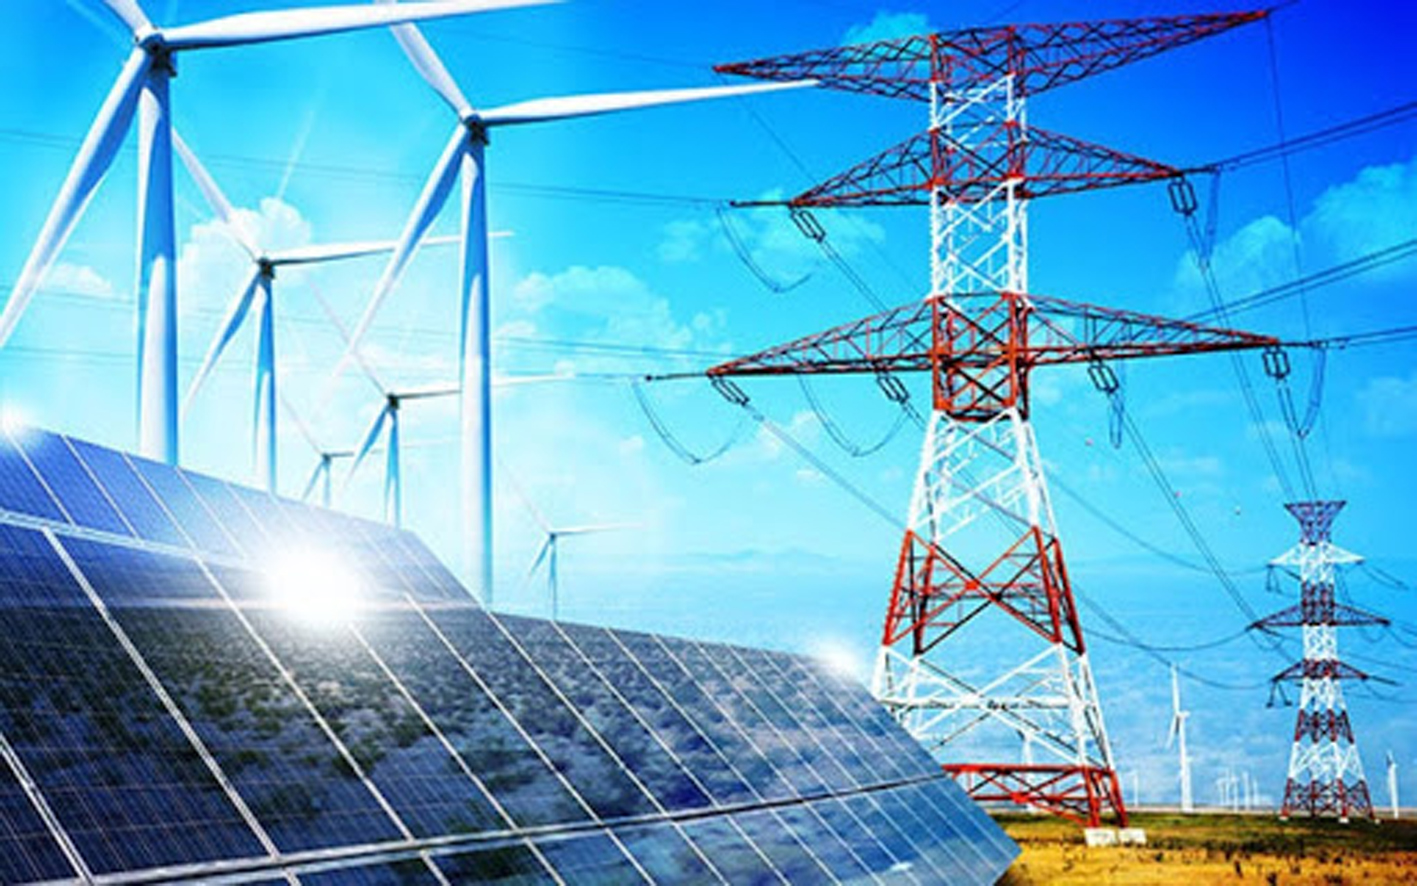  EVN được giao mua toàn bộ sản lượng điện từ các dự án năng lượng tái tạo với mức giá do nhà nước quy định. 